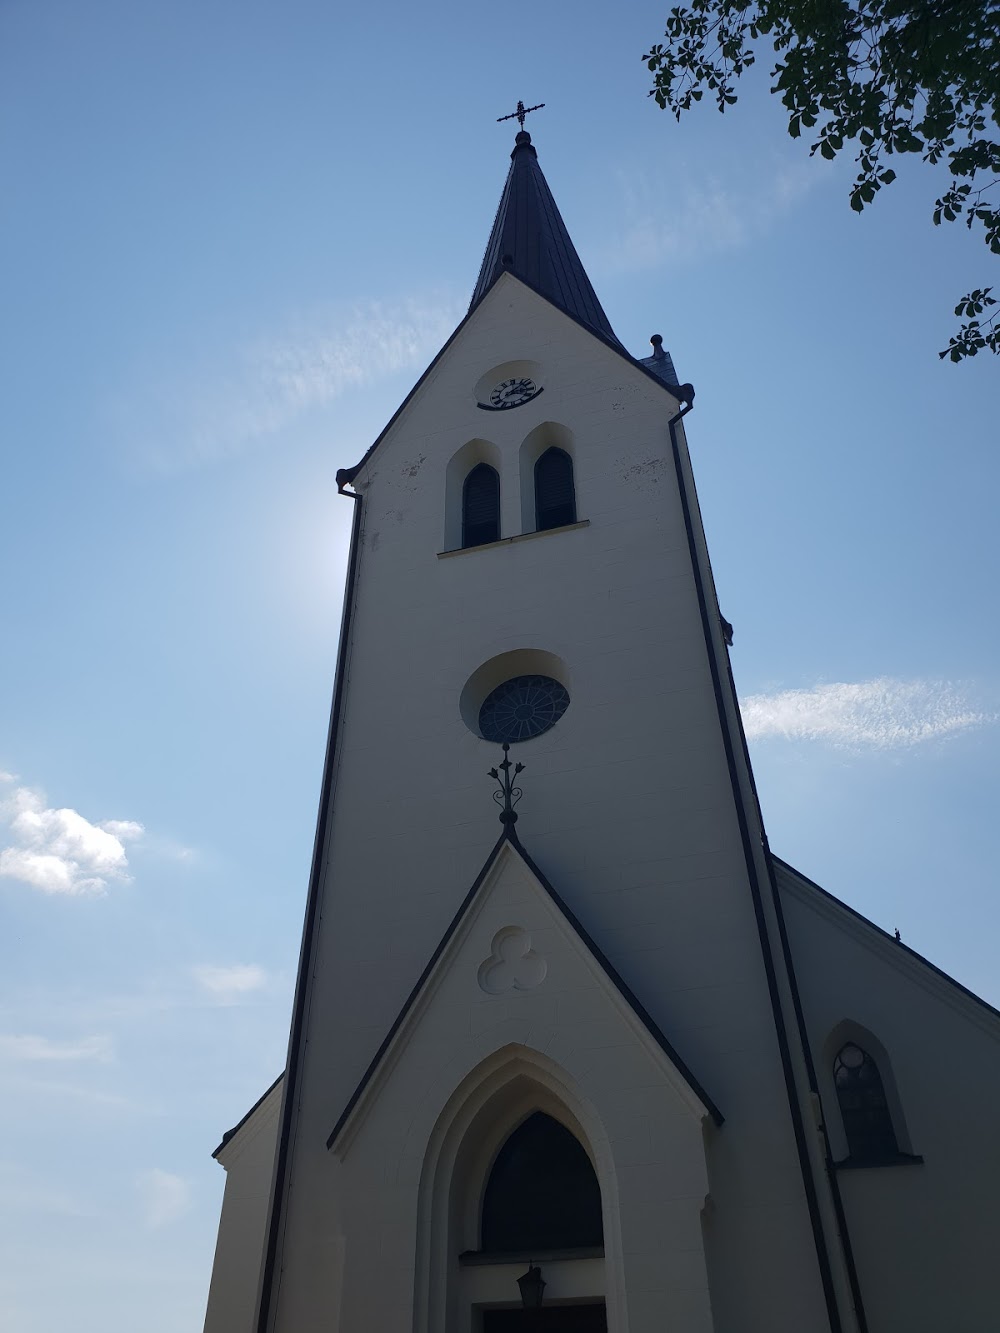 Vara kyrka